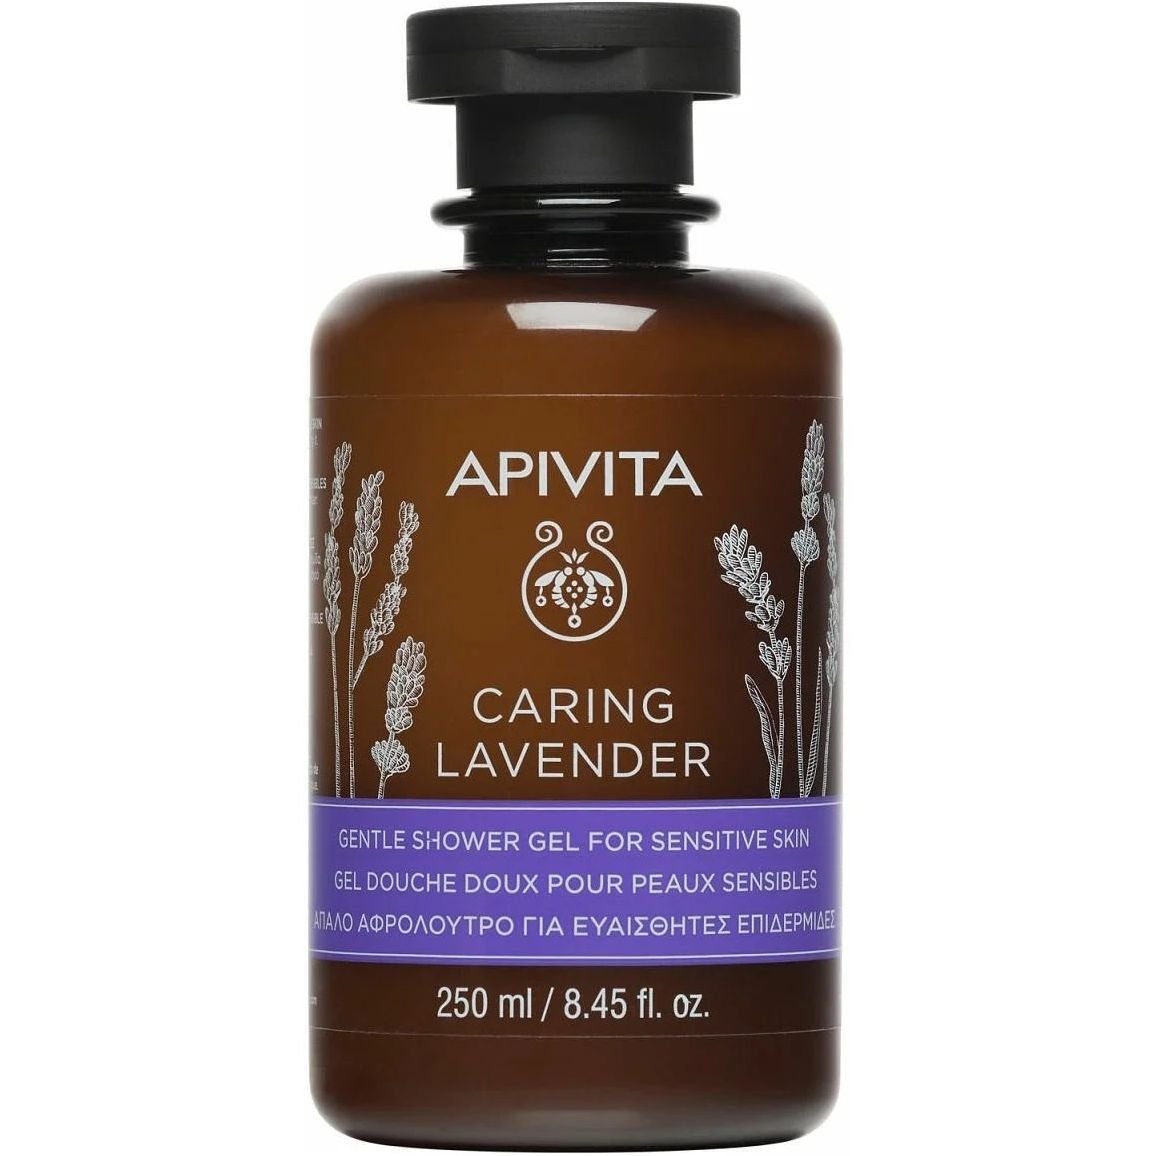 Ніжний гель для душу Apivita Caring Lavender для чутливої шкіри, з лавандою, 250 мл - фото 1